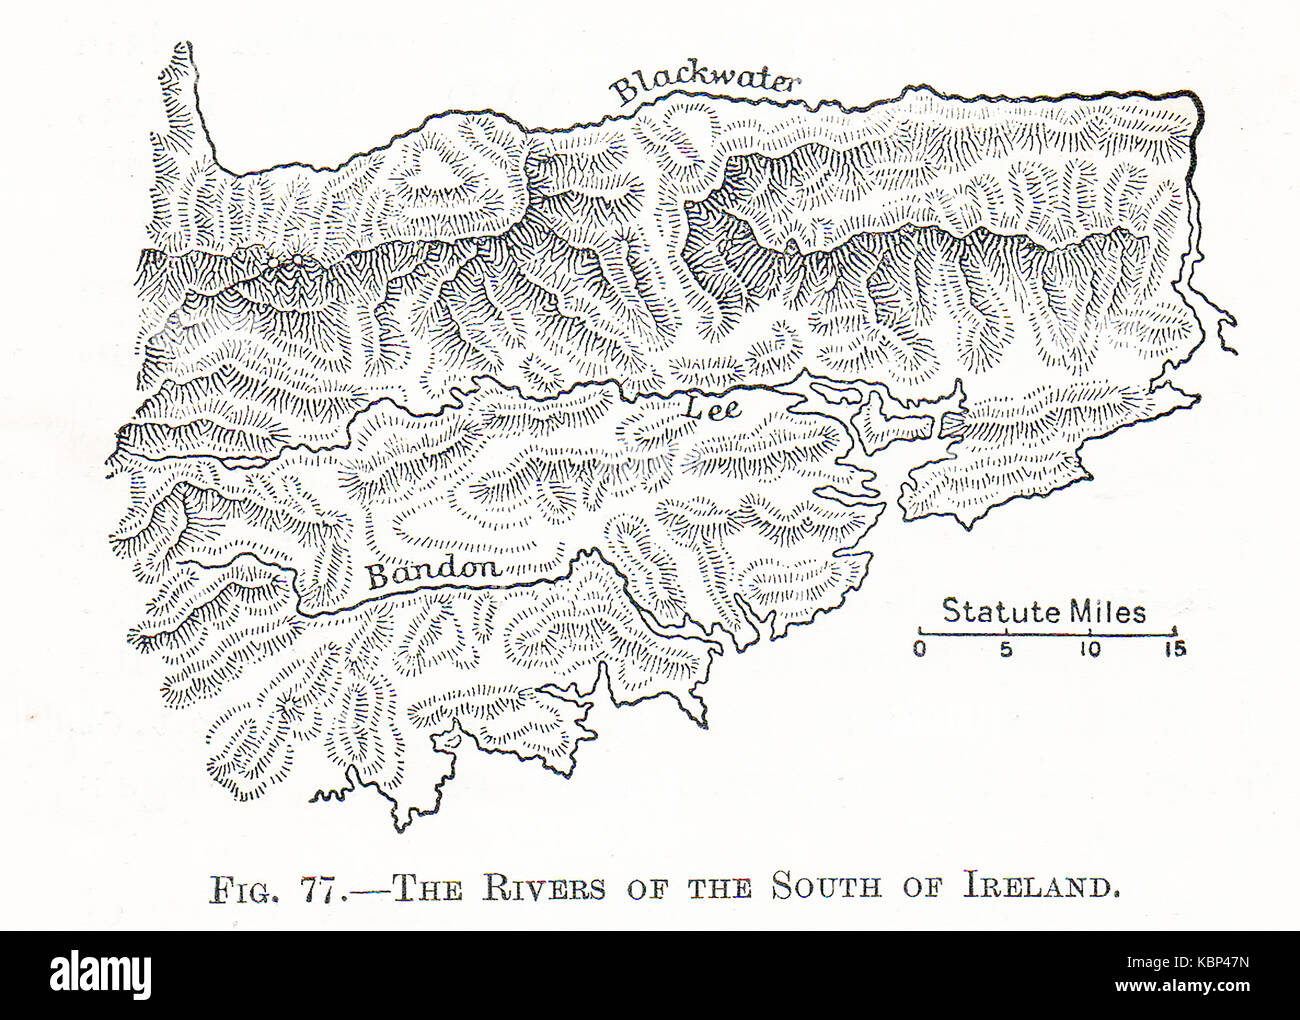 Eine 1914 Karte der großen Flüsse von Lee, Blackwater, und Bandon Süden Irlands Stockfoto